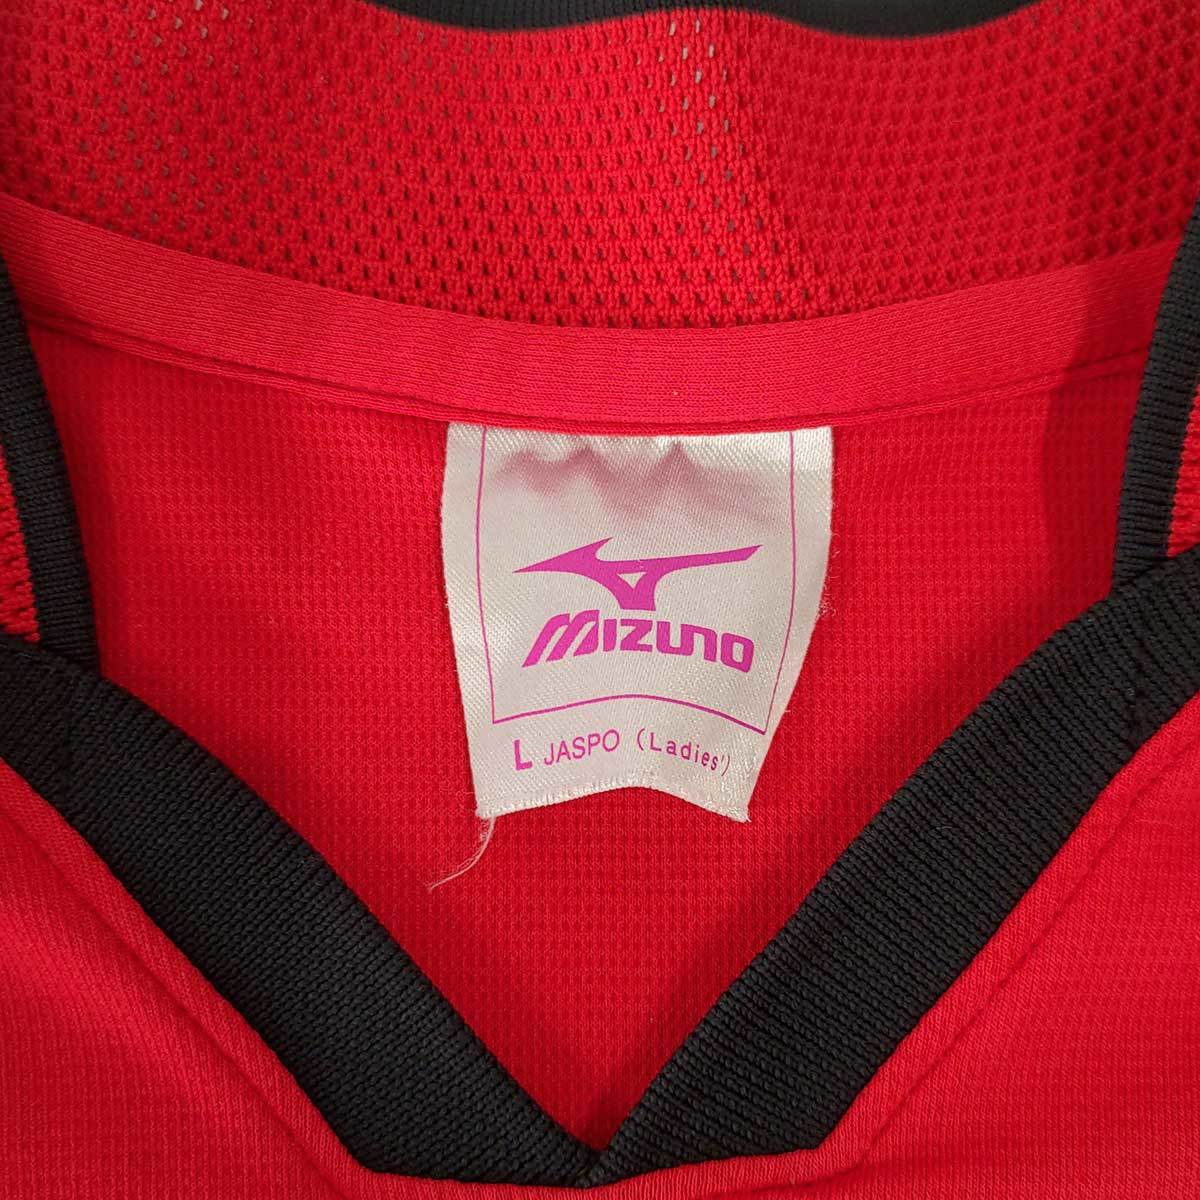 [ б/у ] Mizuno dry рубашка pra рубашка рубашка с коротким рукавом L красный женский MIZUNO спорт одежда 